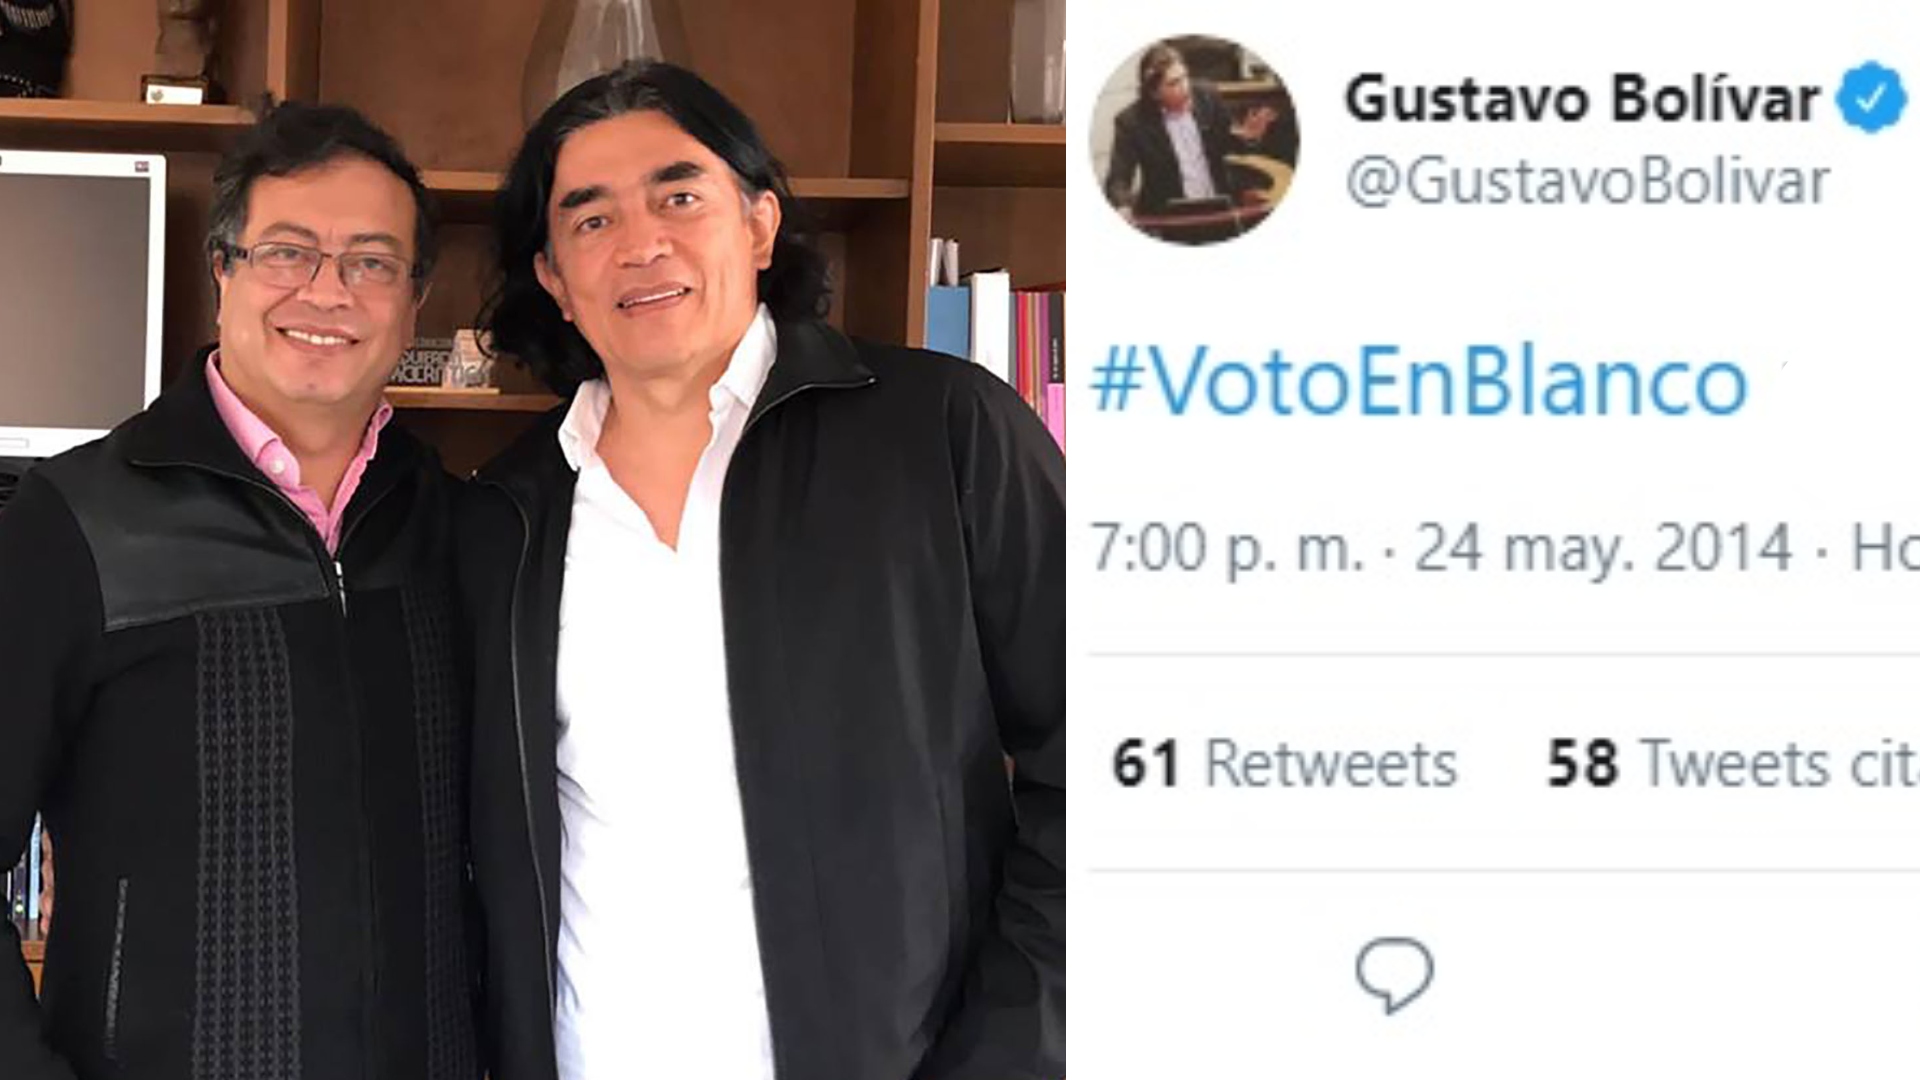 El pasado no perdona: le recordaron a Gustavo Bolívar cuando apoyó el voto en blanco en 2014 y así se justificó